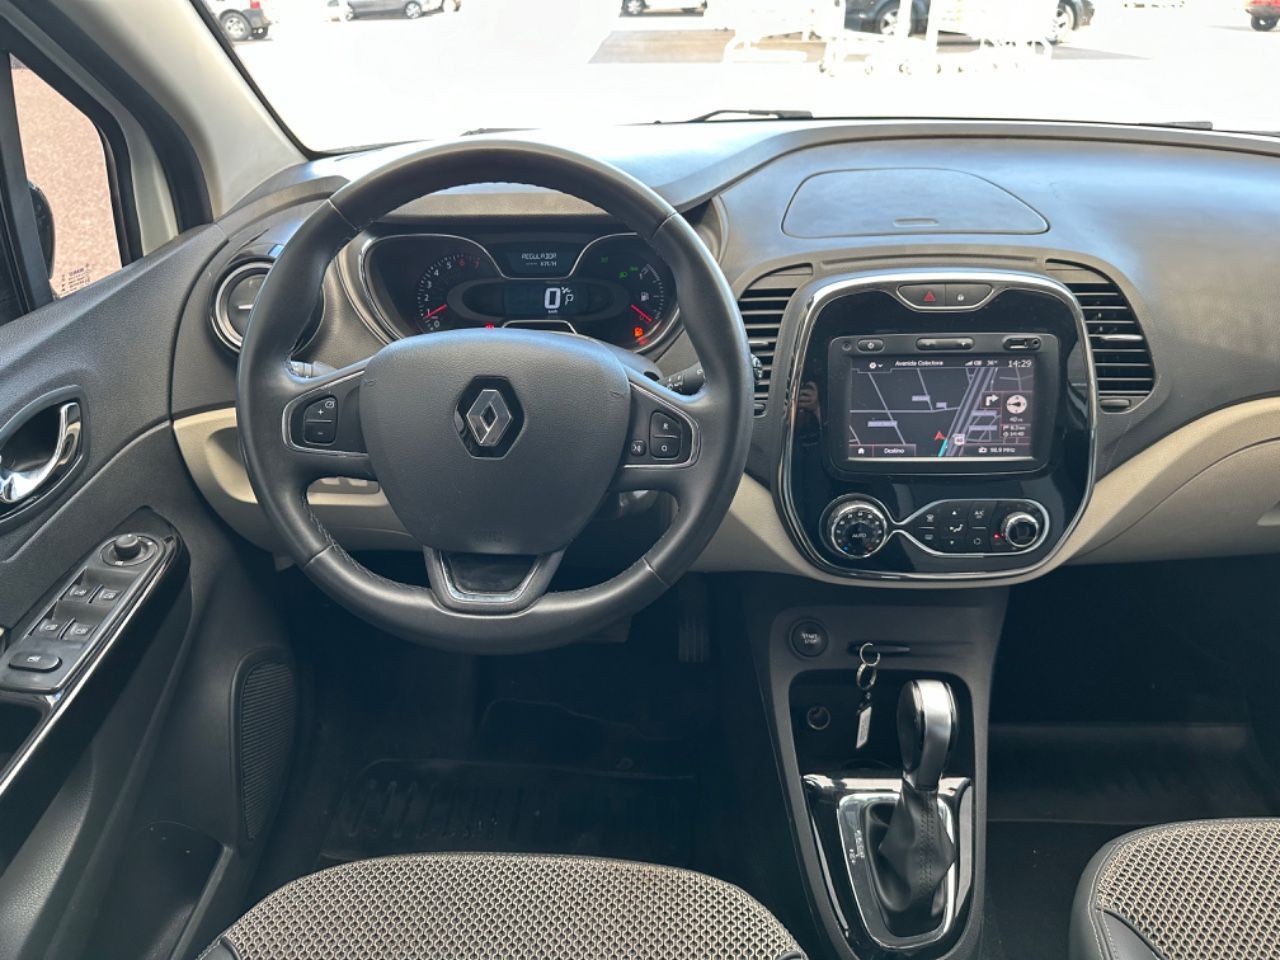 Renault Captur Usado en San Juan, deRuedas